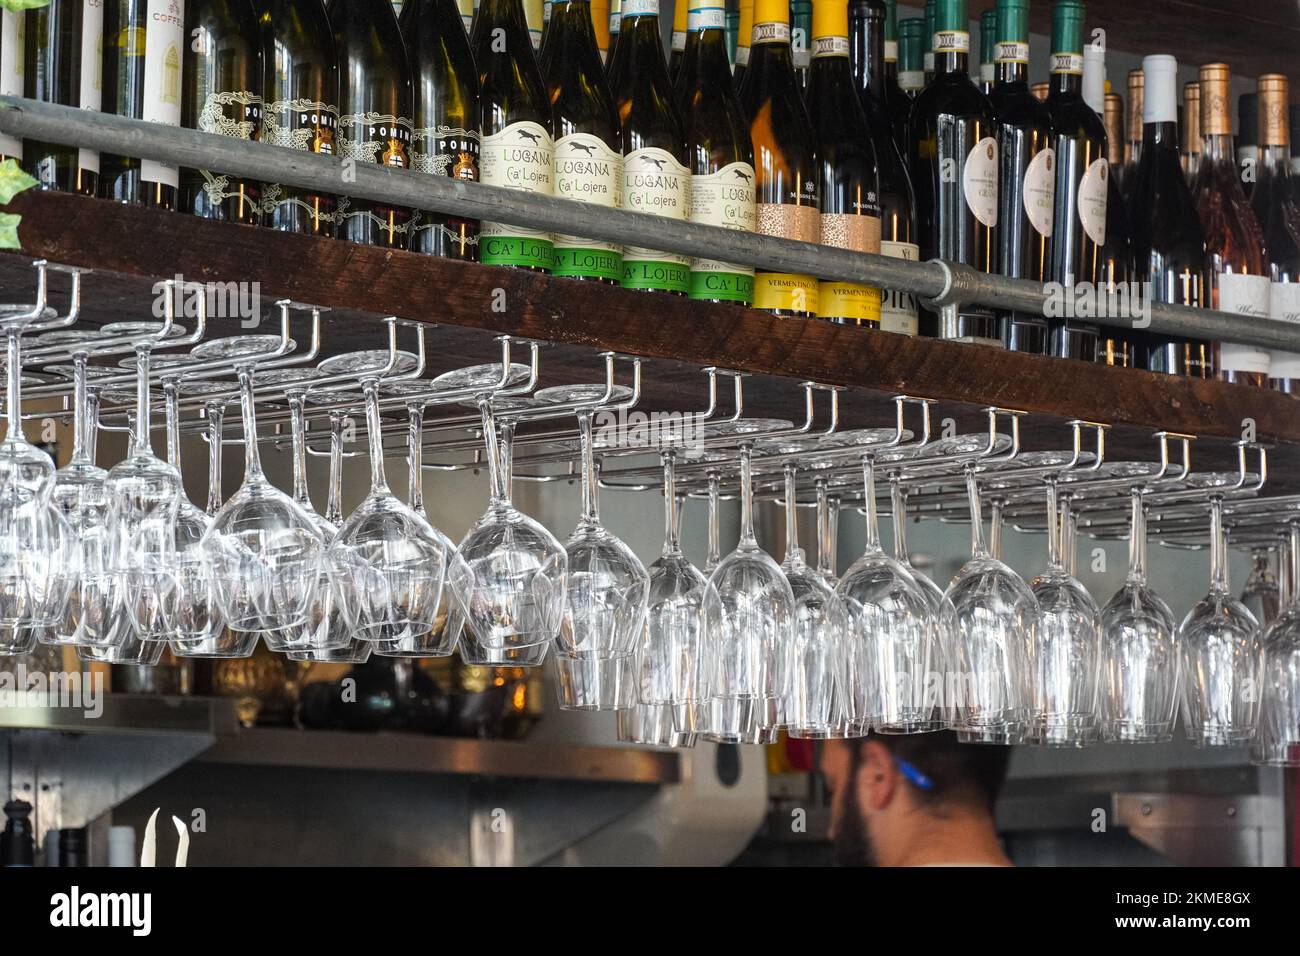 Bouteilles de vin sur le plateau en bois et verres à vin sur un rack dans le restaurant, Londres Angleterre Royaume-Uni Banque D'Images